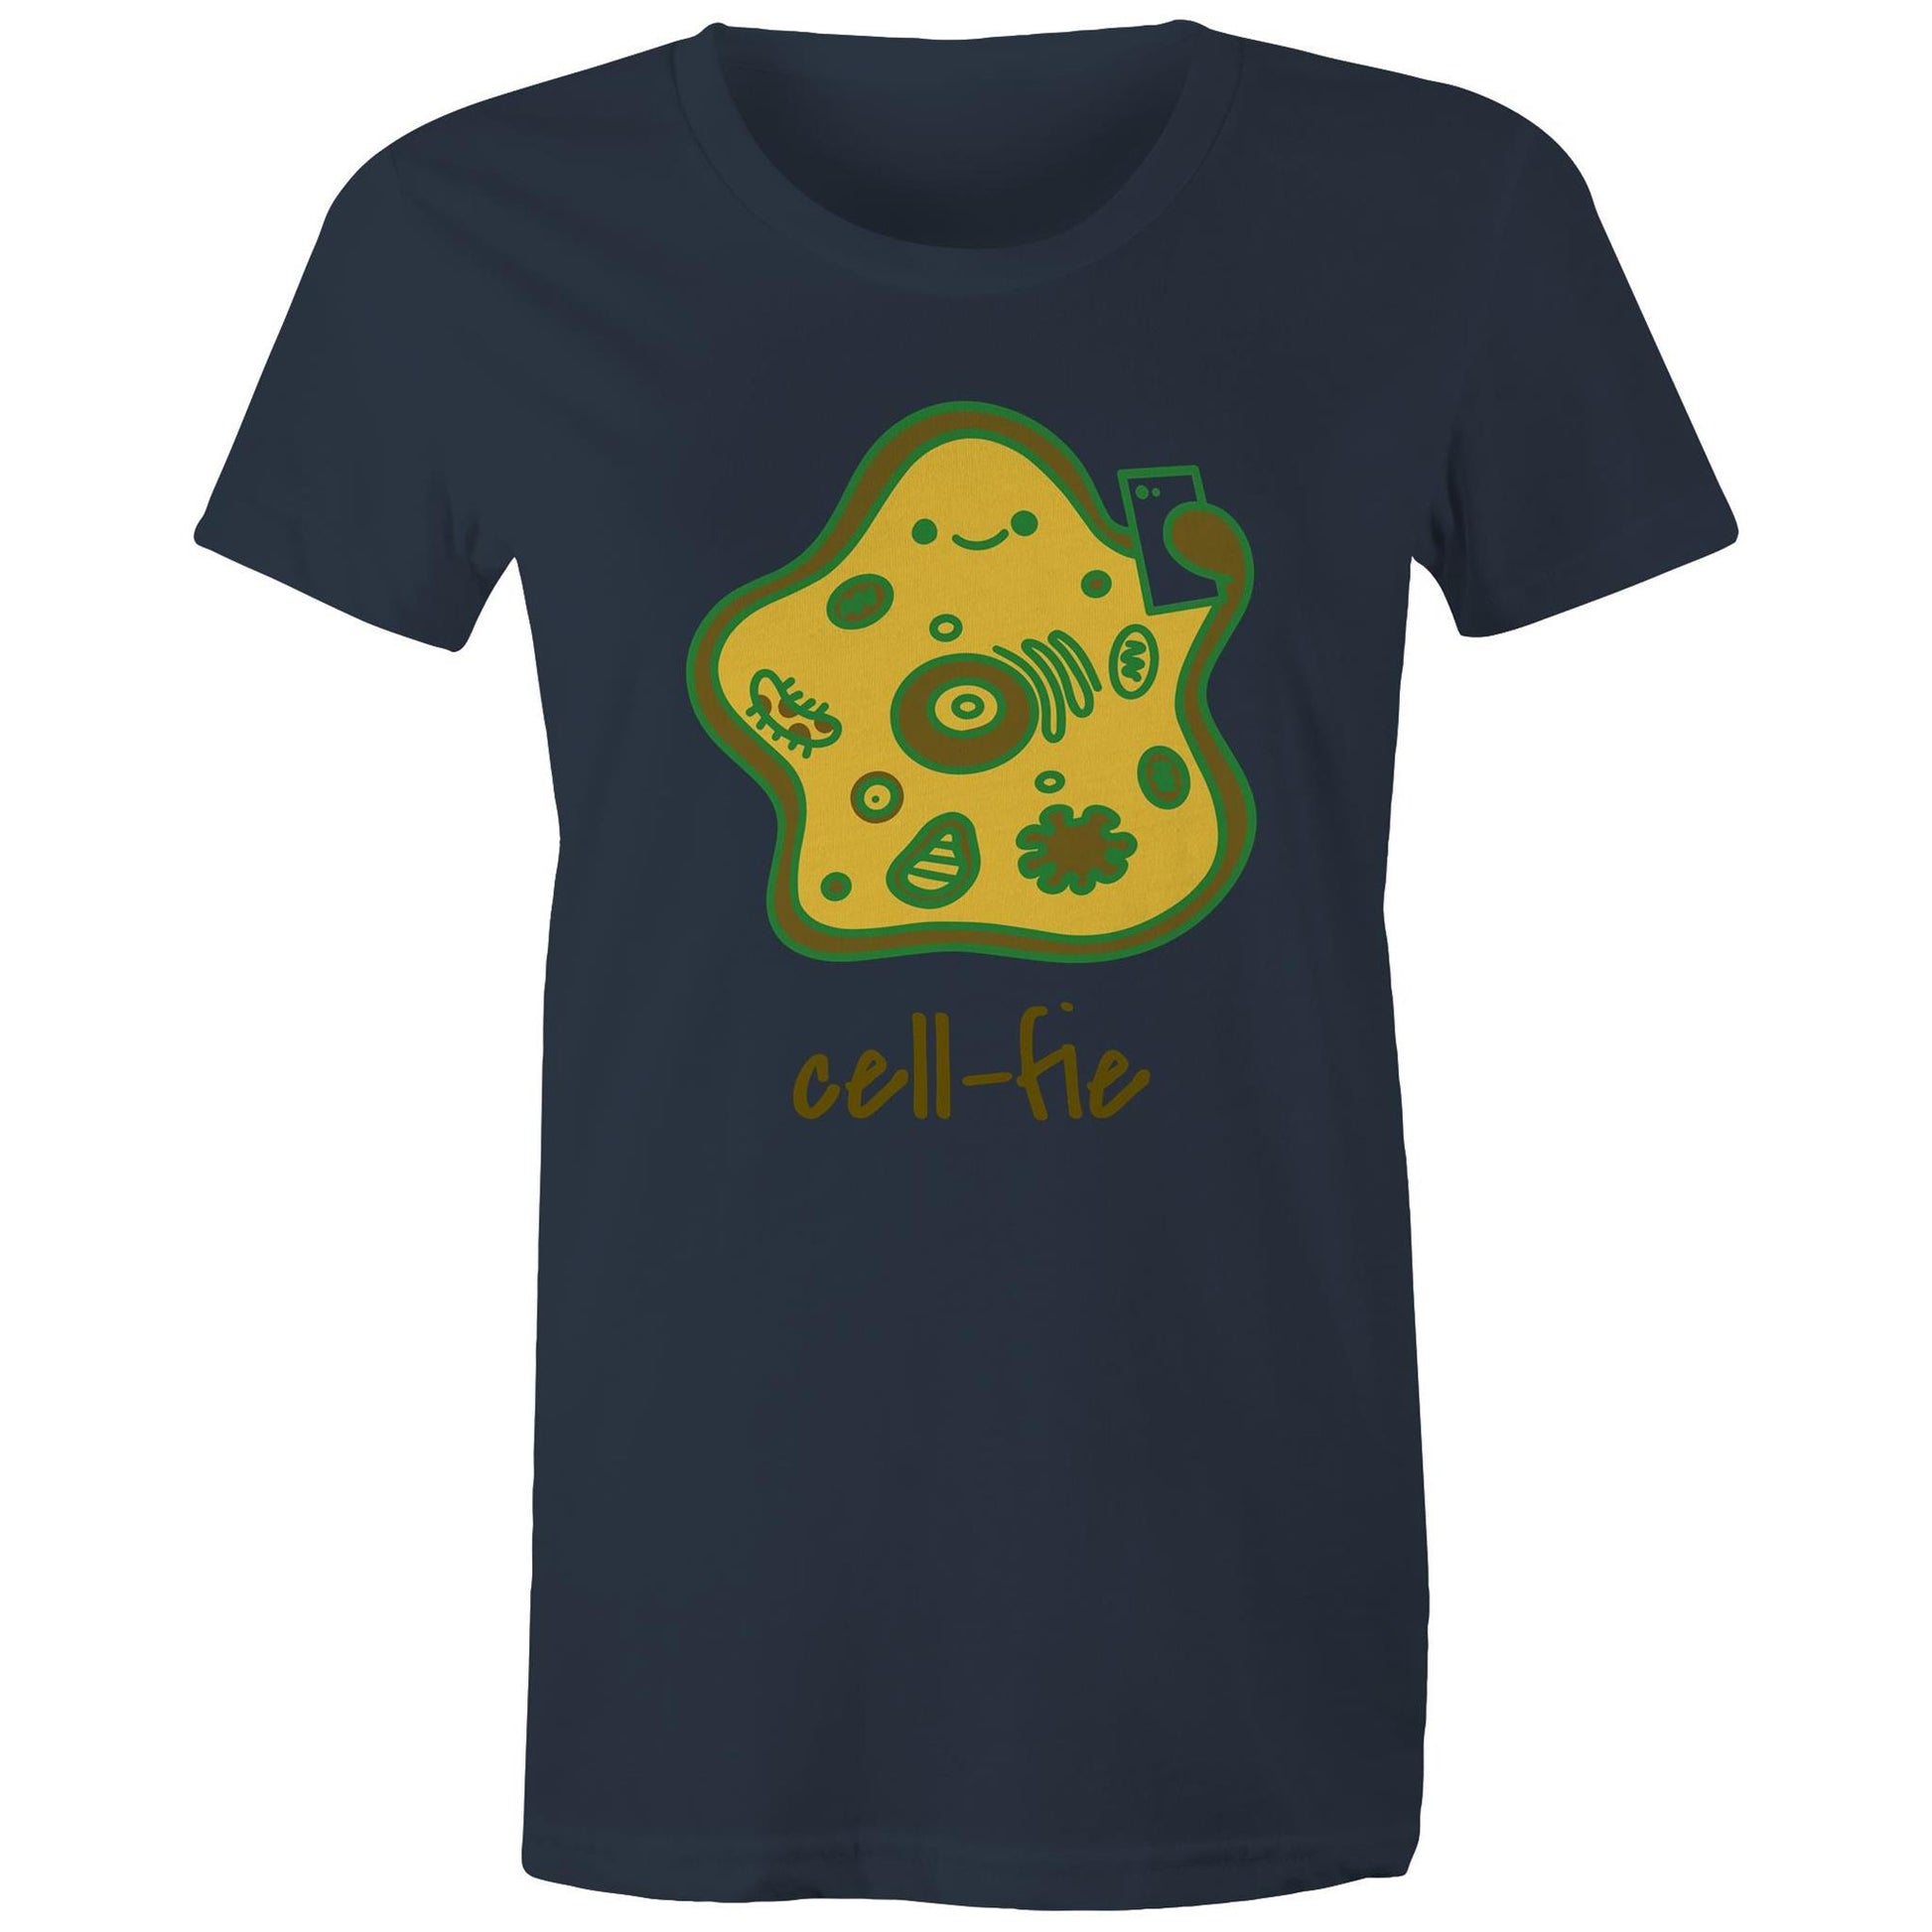 Cell-fie - Womens T-shirt Navy Womens T-shirt Science